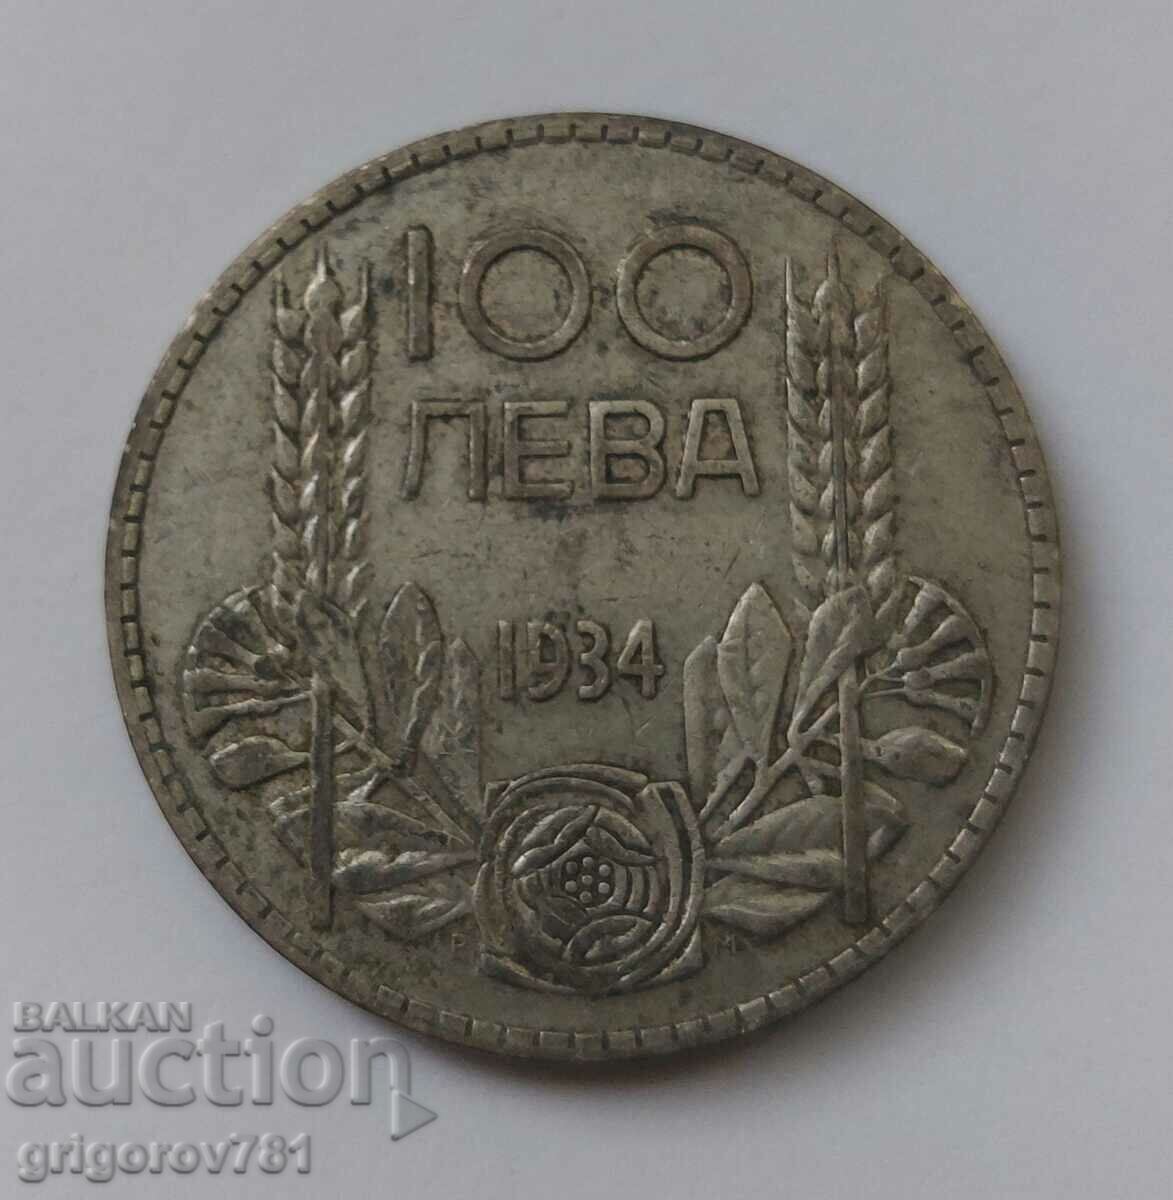 100 leva argint Bulgaria 1934 - monedă de argint #39